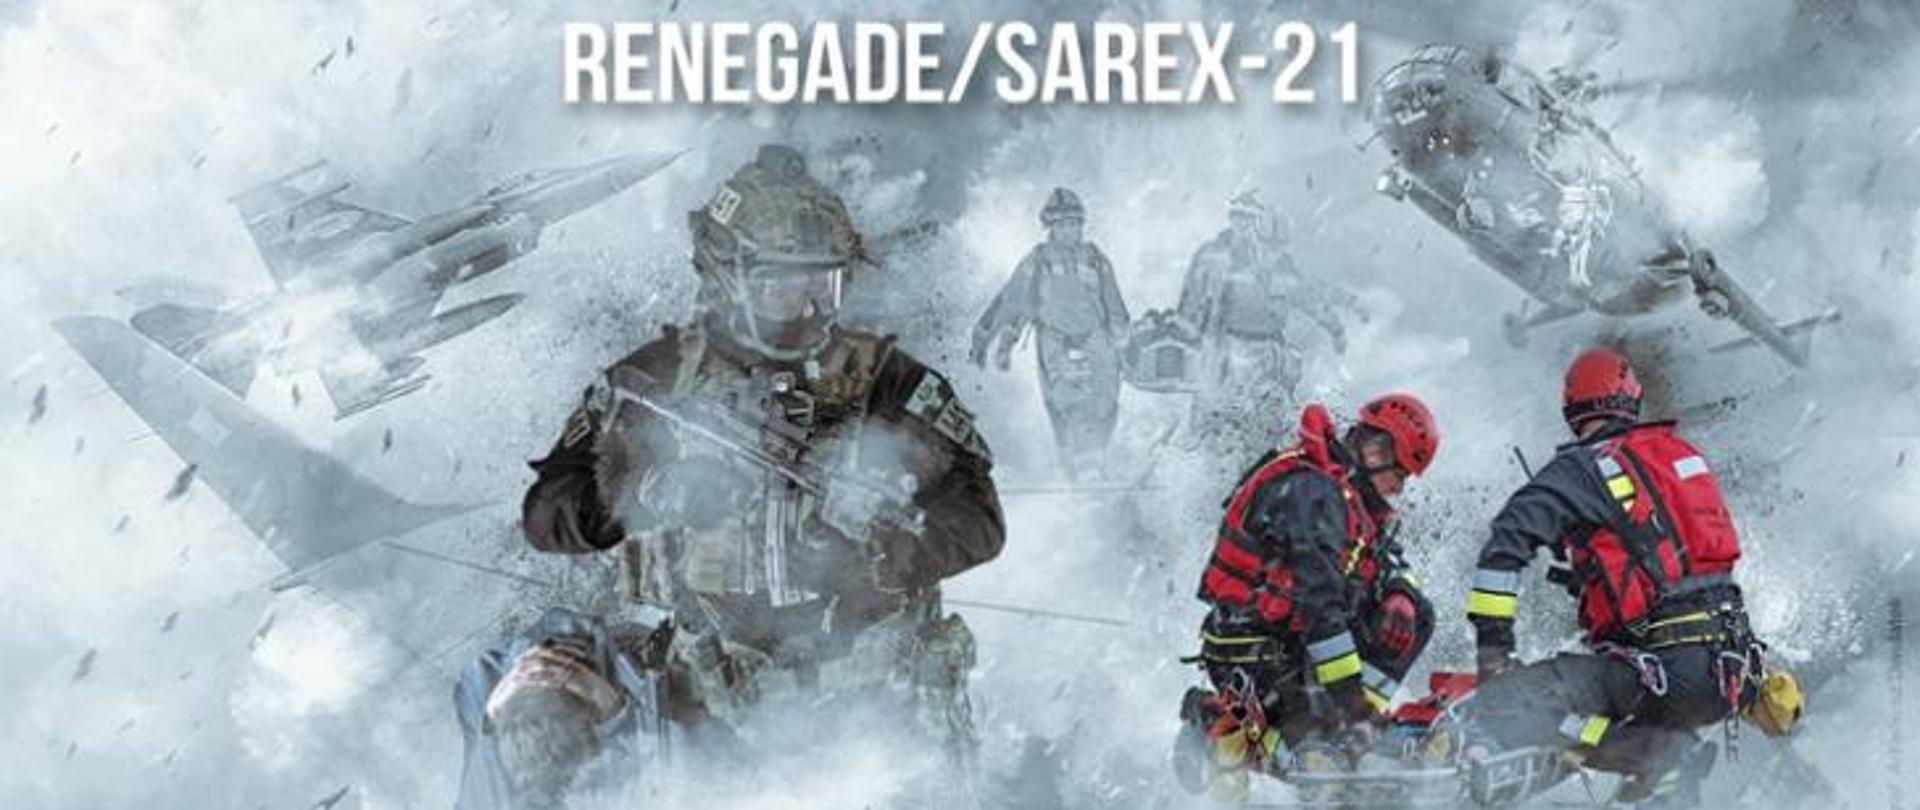 Ćwiczenia RENEGADE/SAREX-21